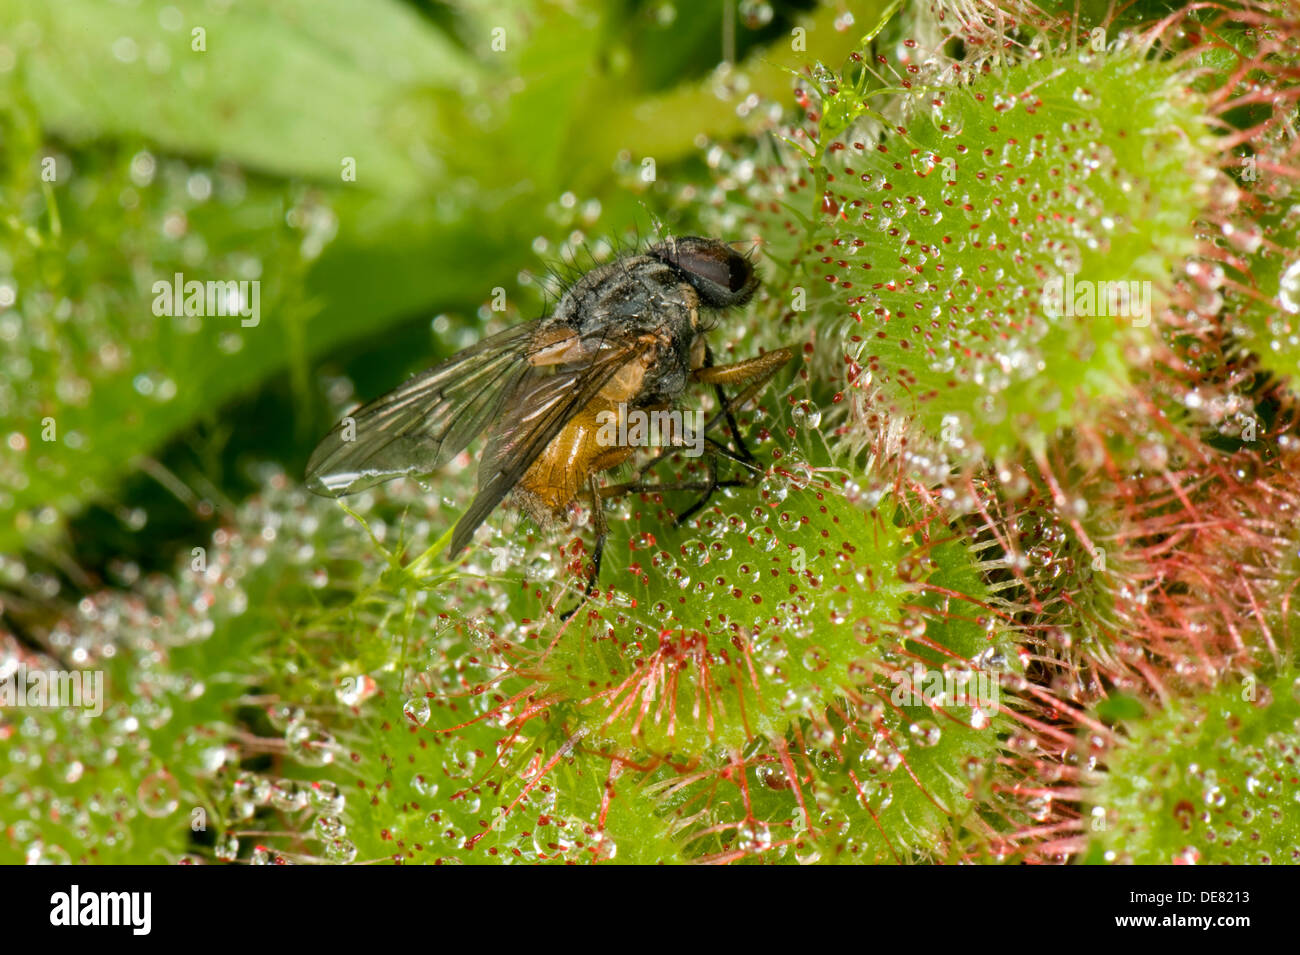 Une mouche pris sur les poils collants d'un sundew Drosera aliciae,, une plante carnivores des tourbières et marais Banque D'Images